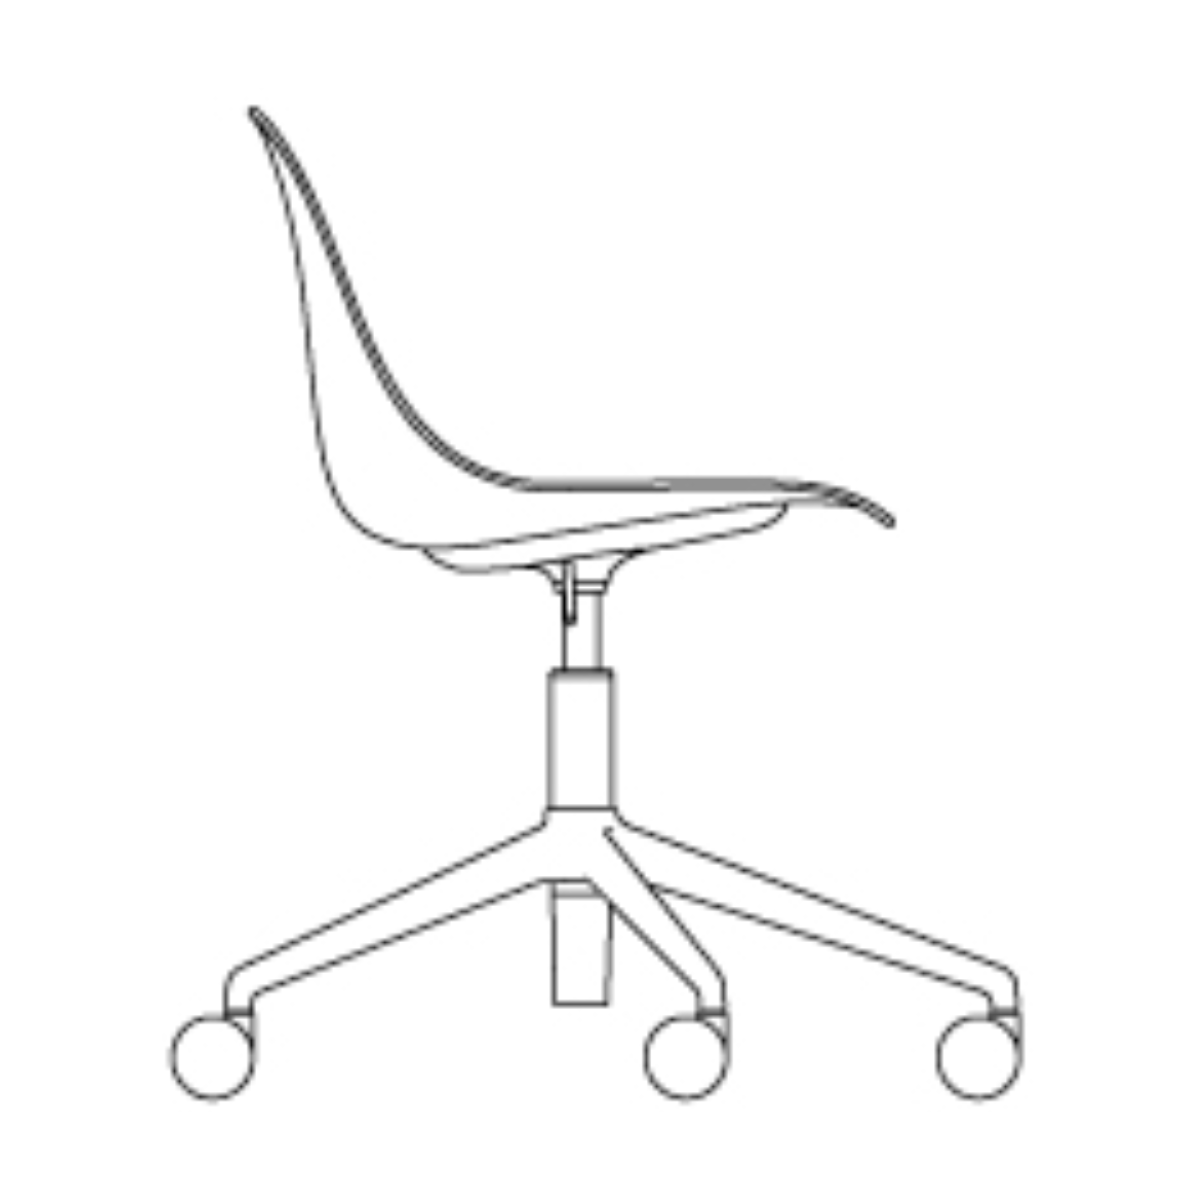 coque nue - fauteuil Fiber sans accoudoir - Réglable en hauteur pivotant avec roulettes